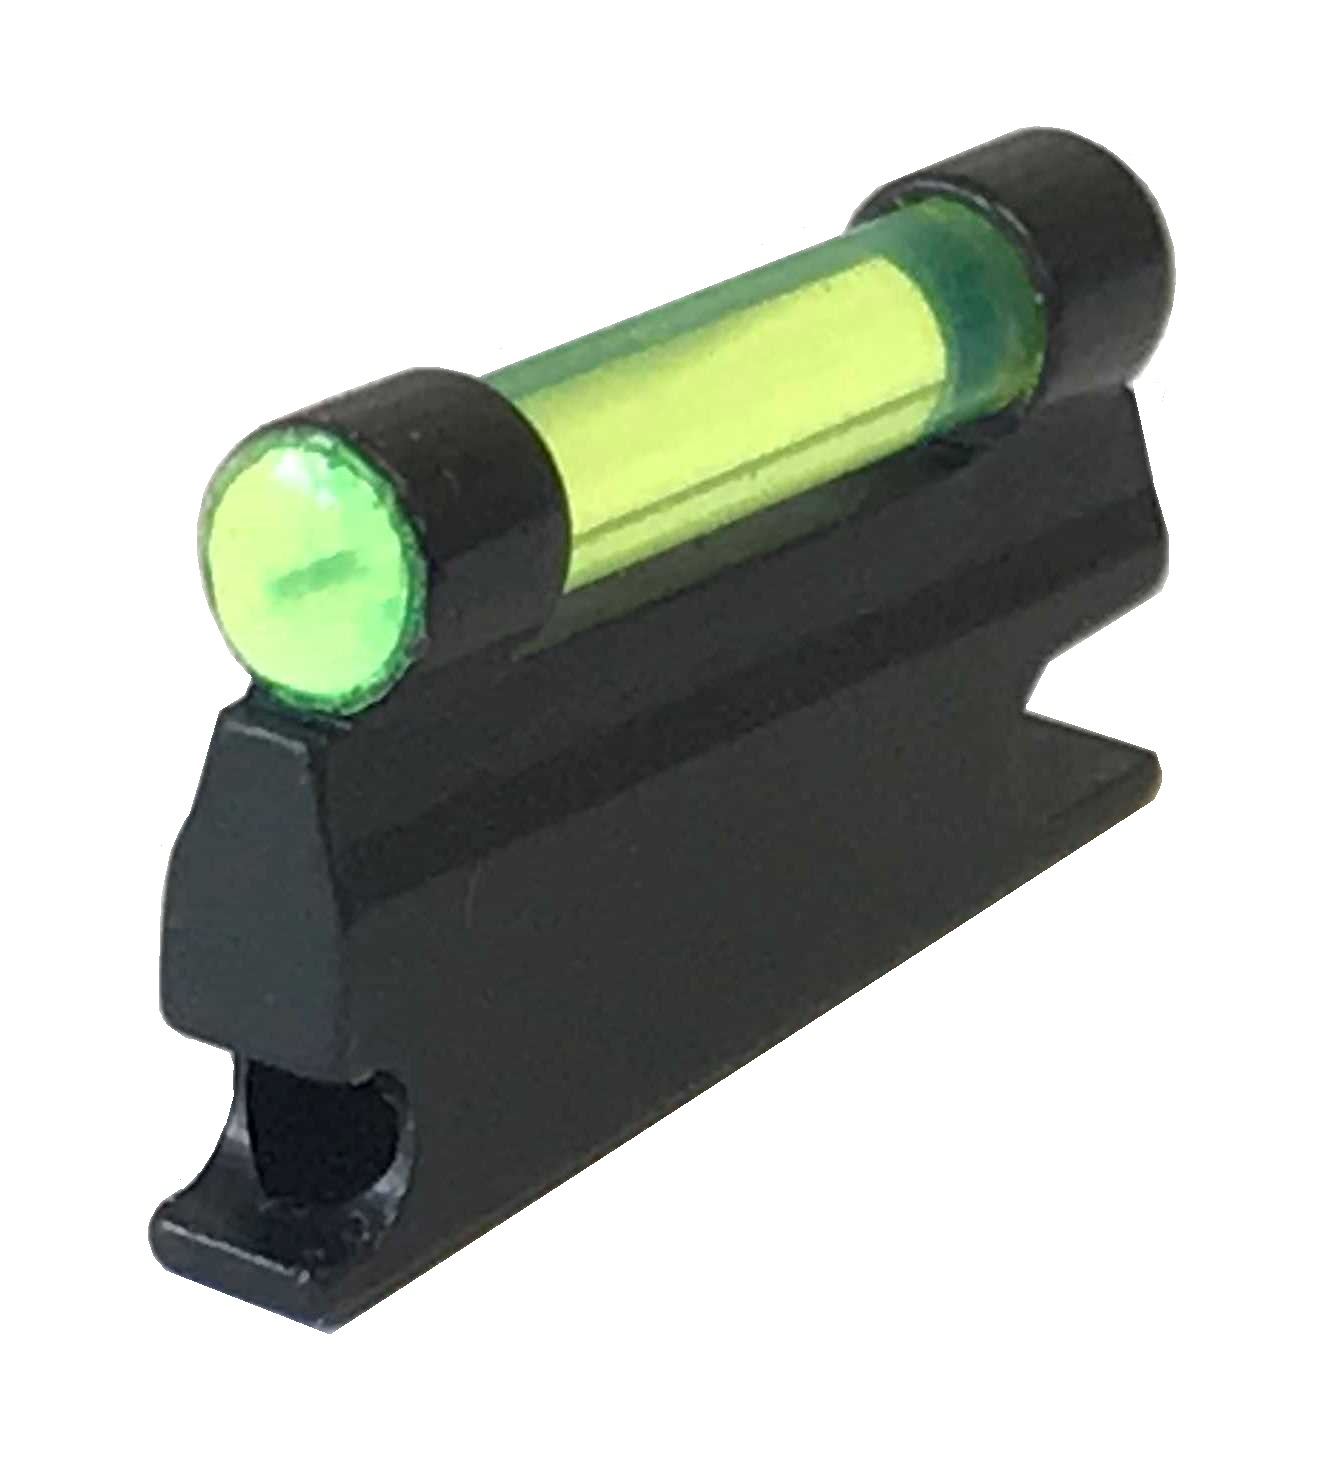 3/32" Green Fiber Optic for NECG Universal Ramp - R-108-9